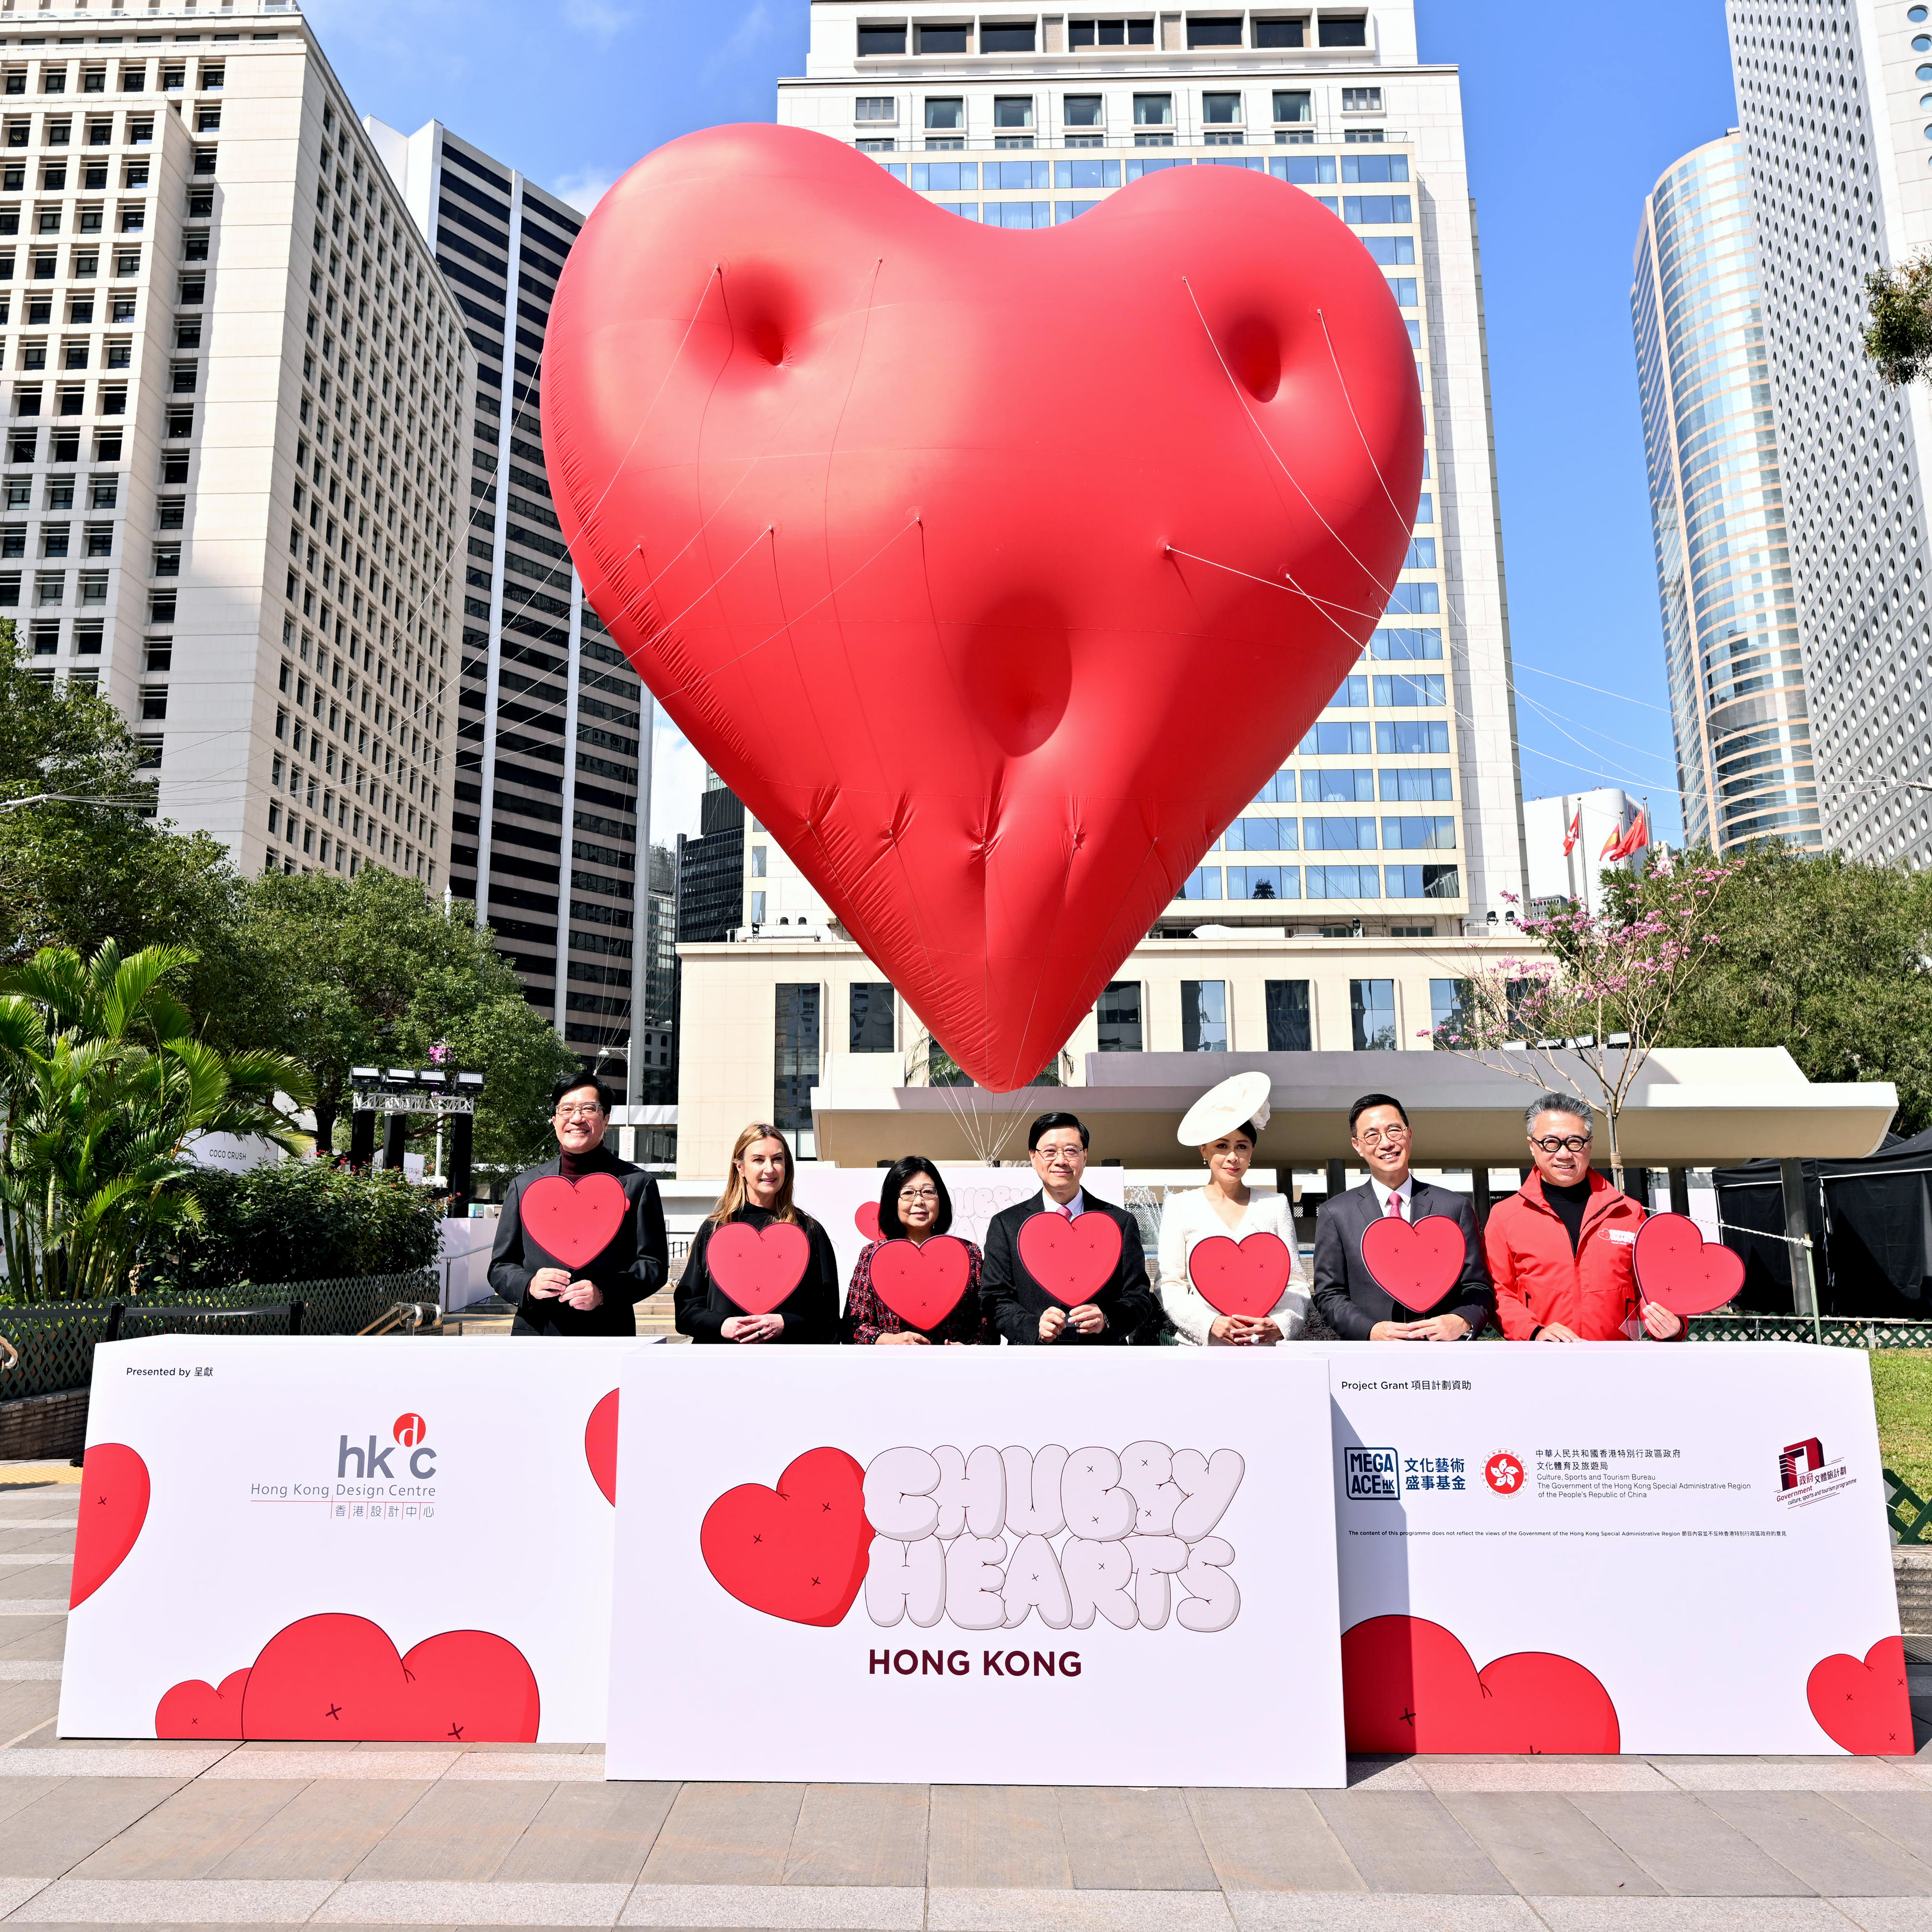 香港设计中心策展及呈献： “Chubby Hearts Hong Kong”情人节正式开展